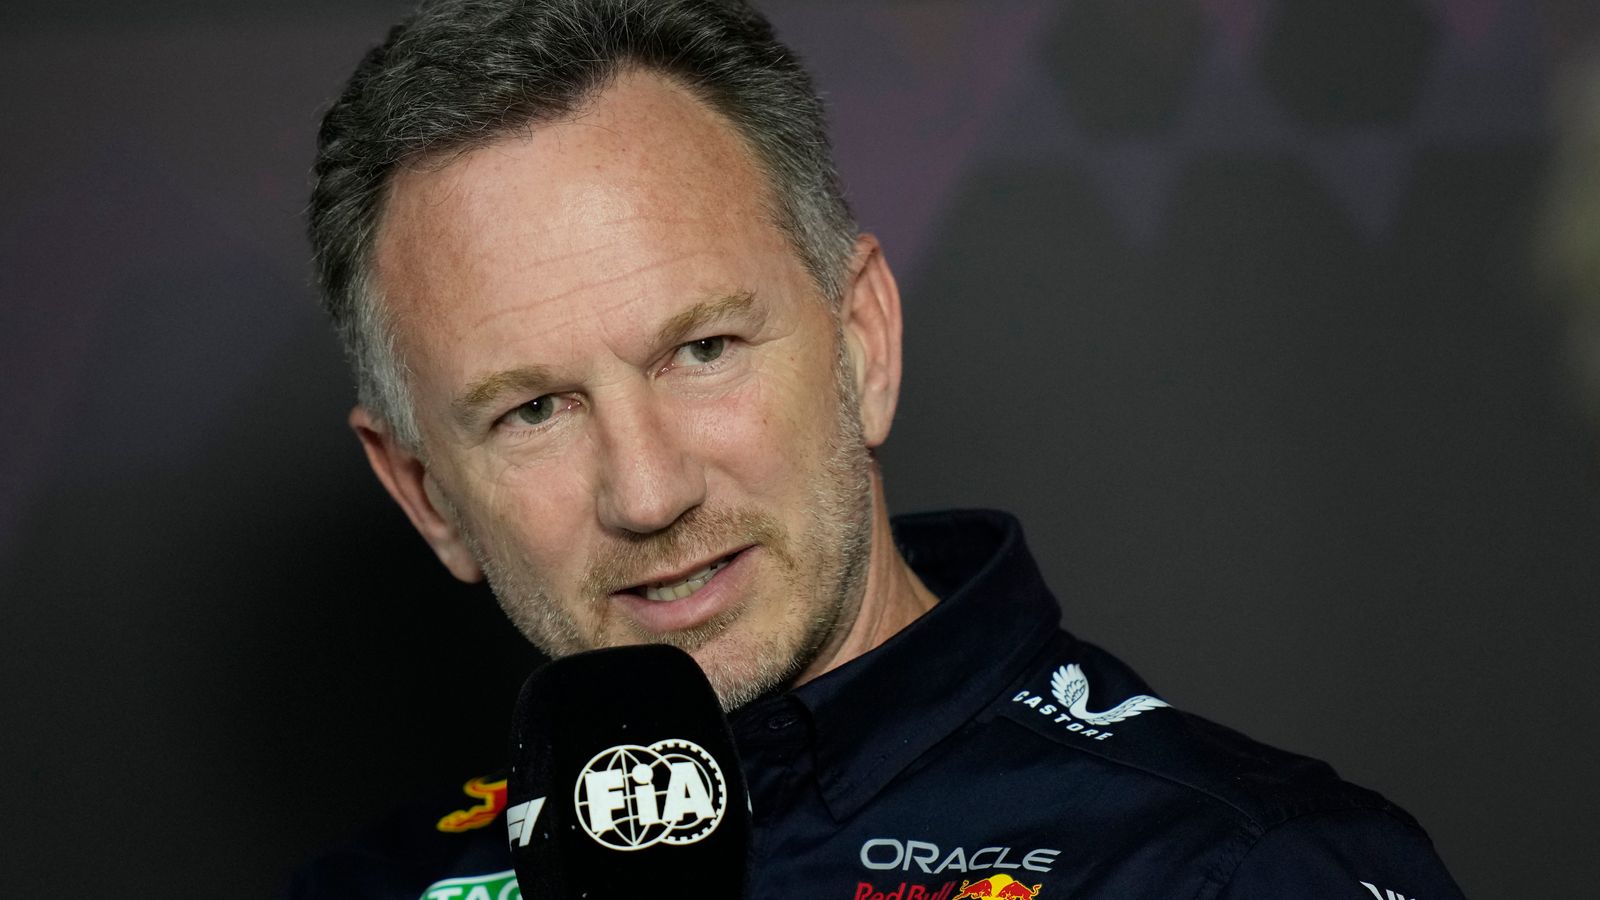 Кристиан Хорнер: Обвинителят на шефа на Формула 1 обжалва решението да бъде освободен шефът на Ред Бул за неправомерно поведение